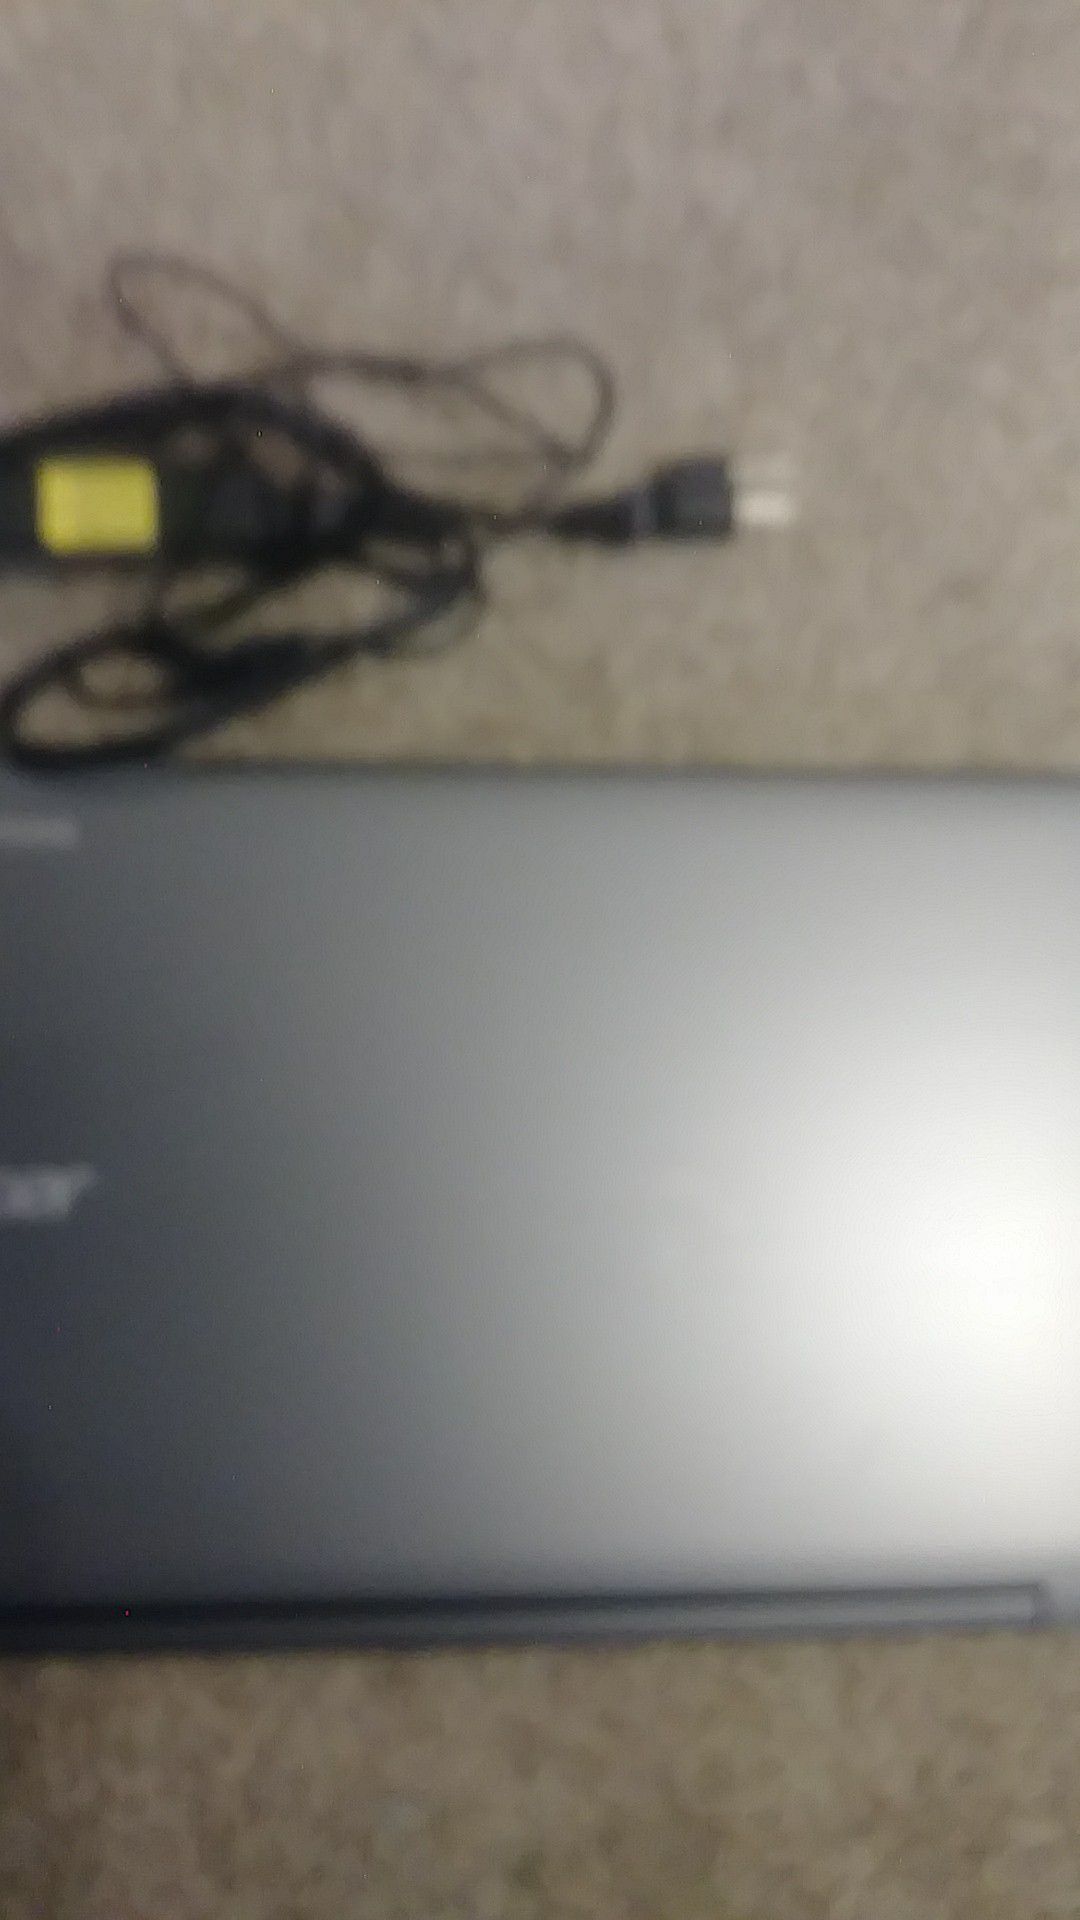 4 brand new Acer Chrome laptop